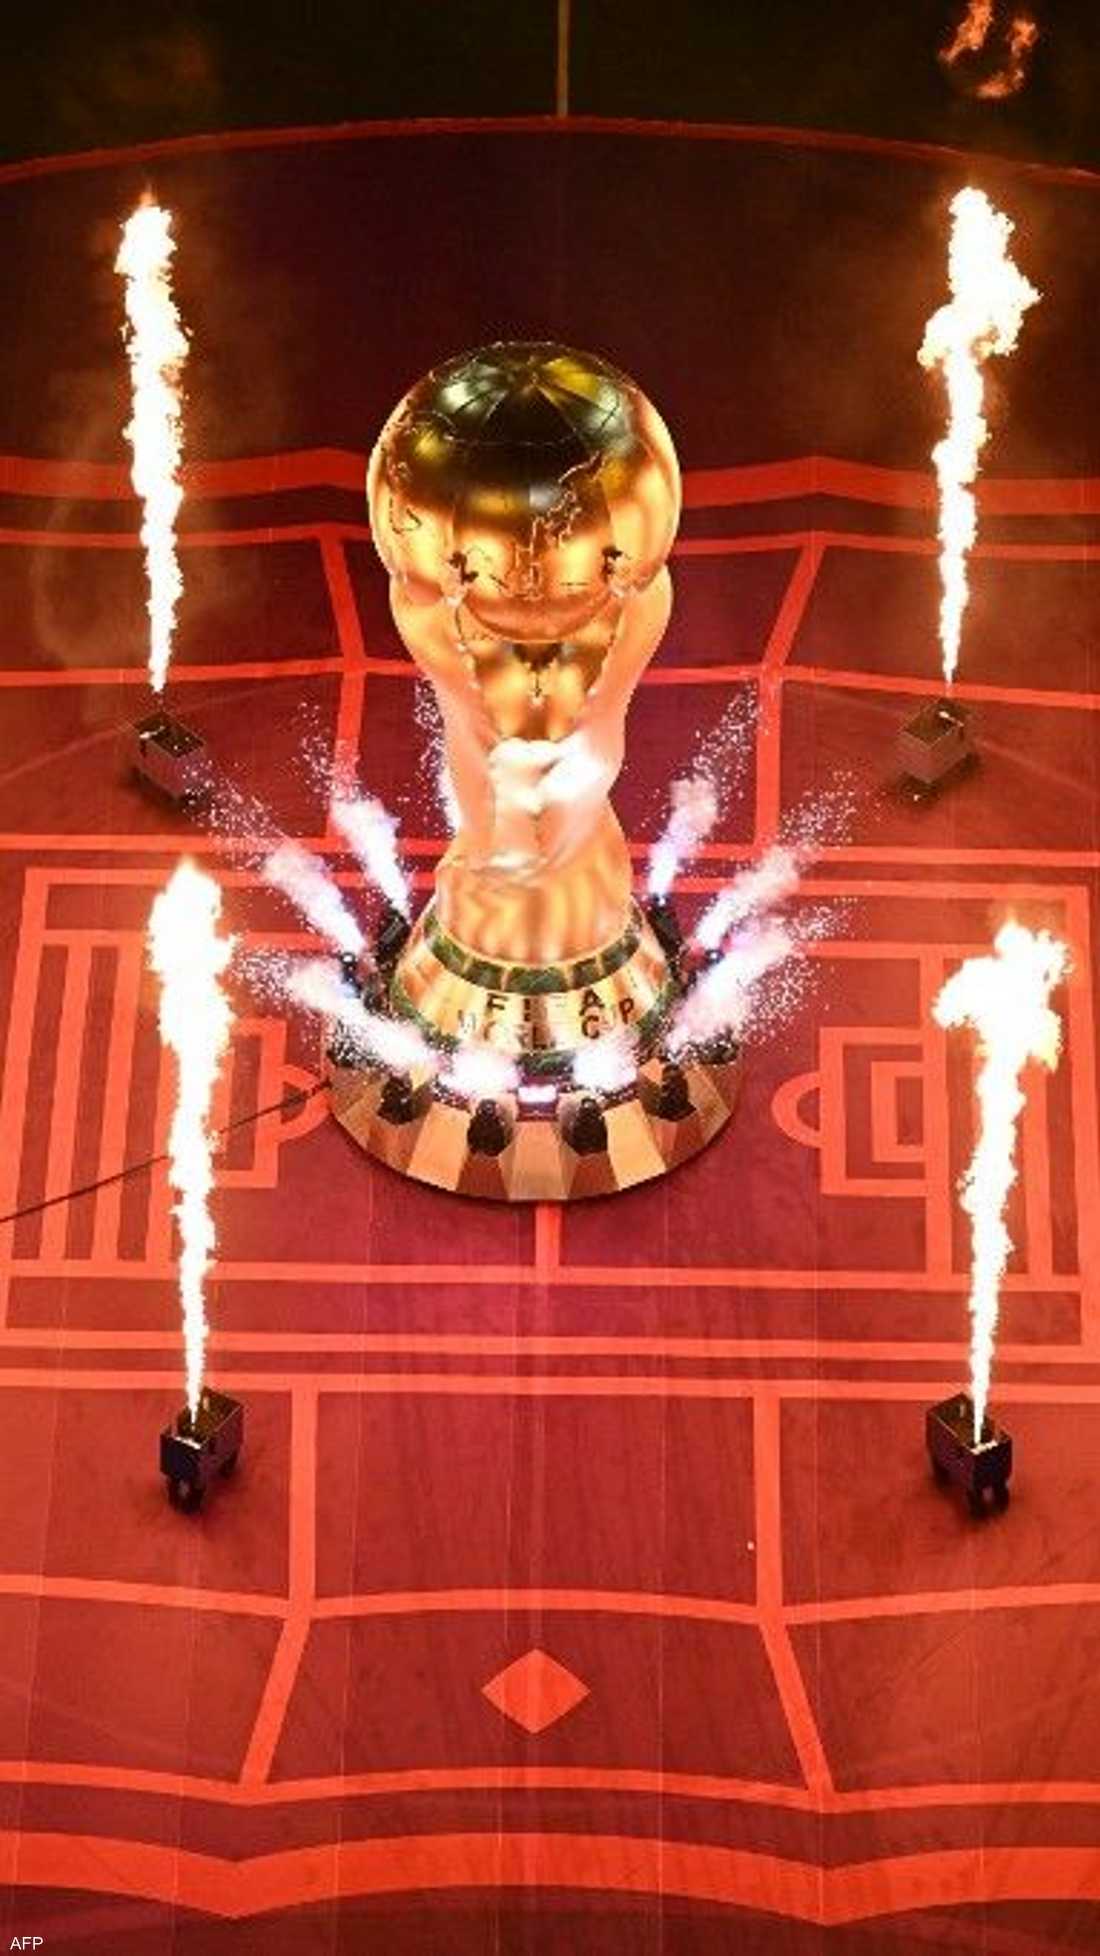 شهد استاد البيت في العاصمة القطرية الدوحة، الأحد، افتتاح أول بطولة لكأس العالم لكرة القدم في الشرق الأوسط، وسط تدفق زعماء العالم ومشجعي كرة القدم.